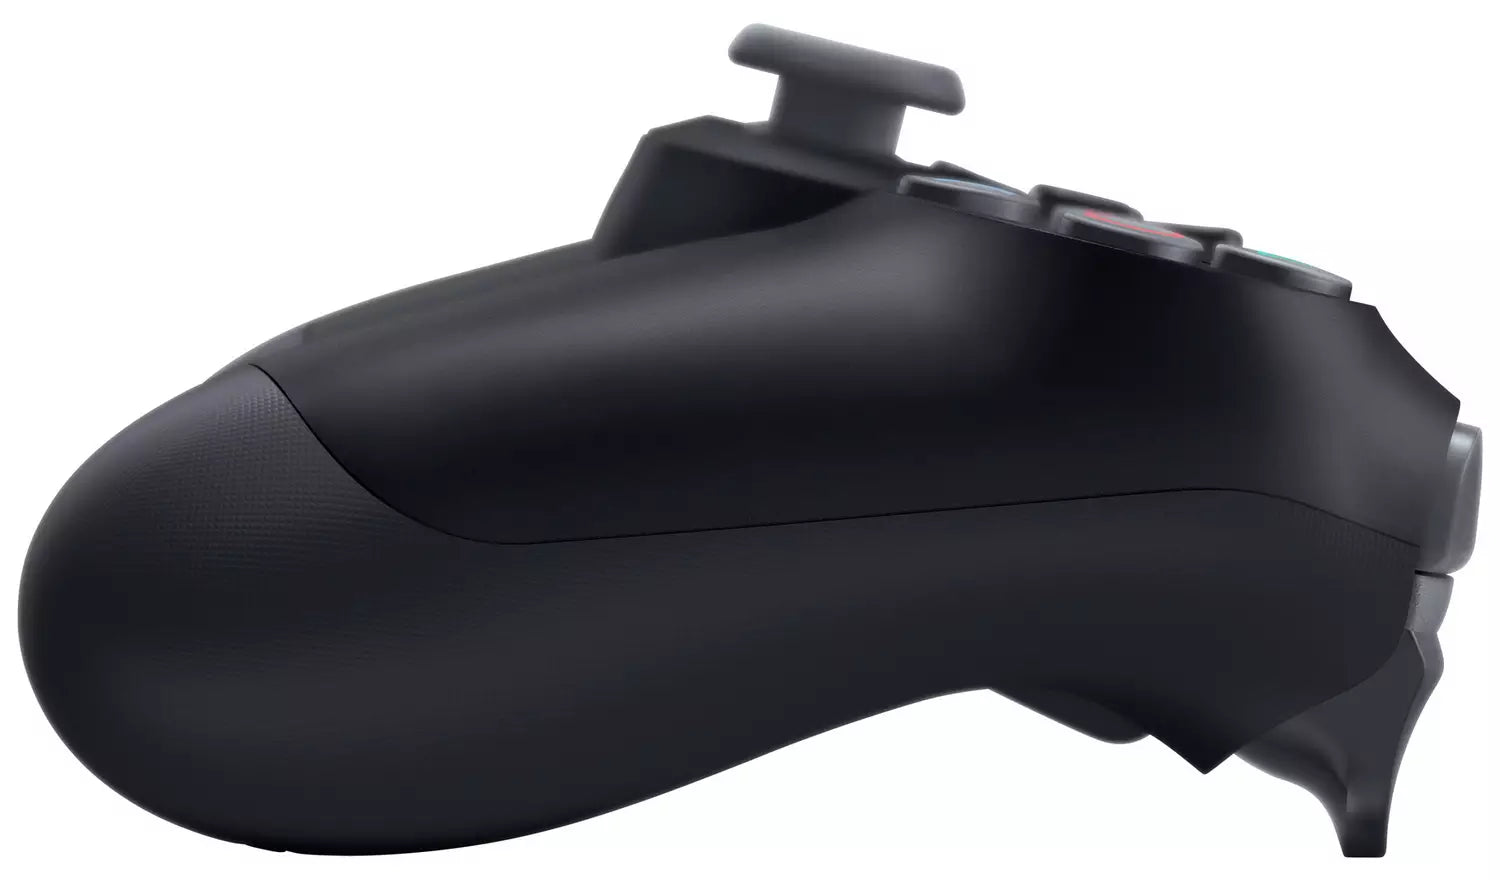 PlayStation 4 DualShock Controller V2 - Black - Refurbished Excellent